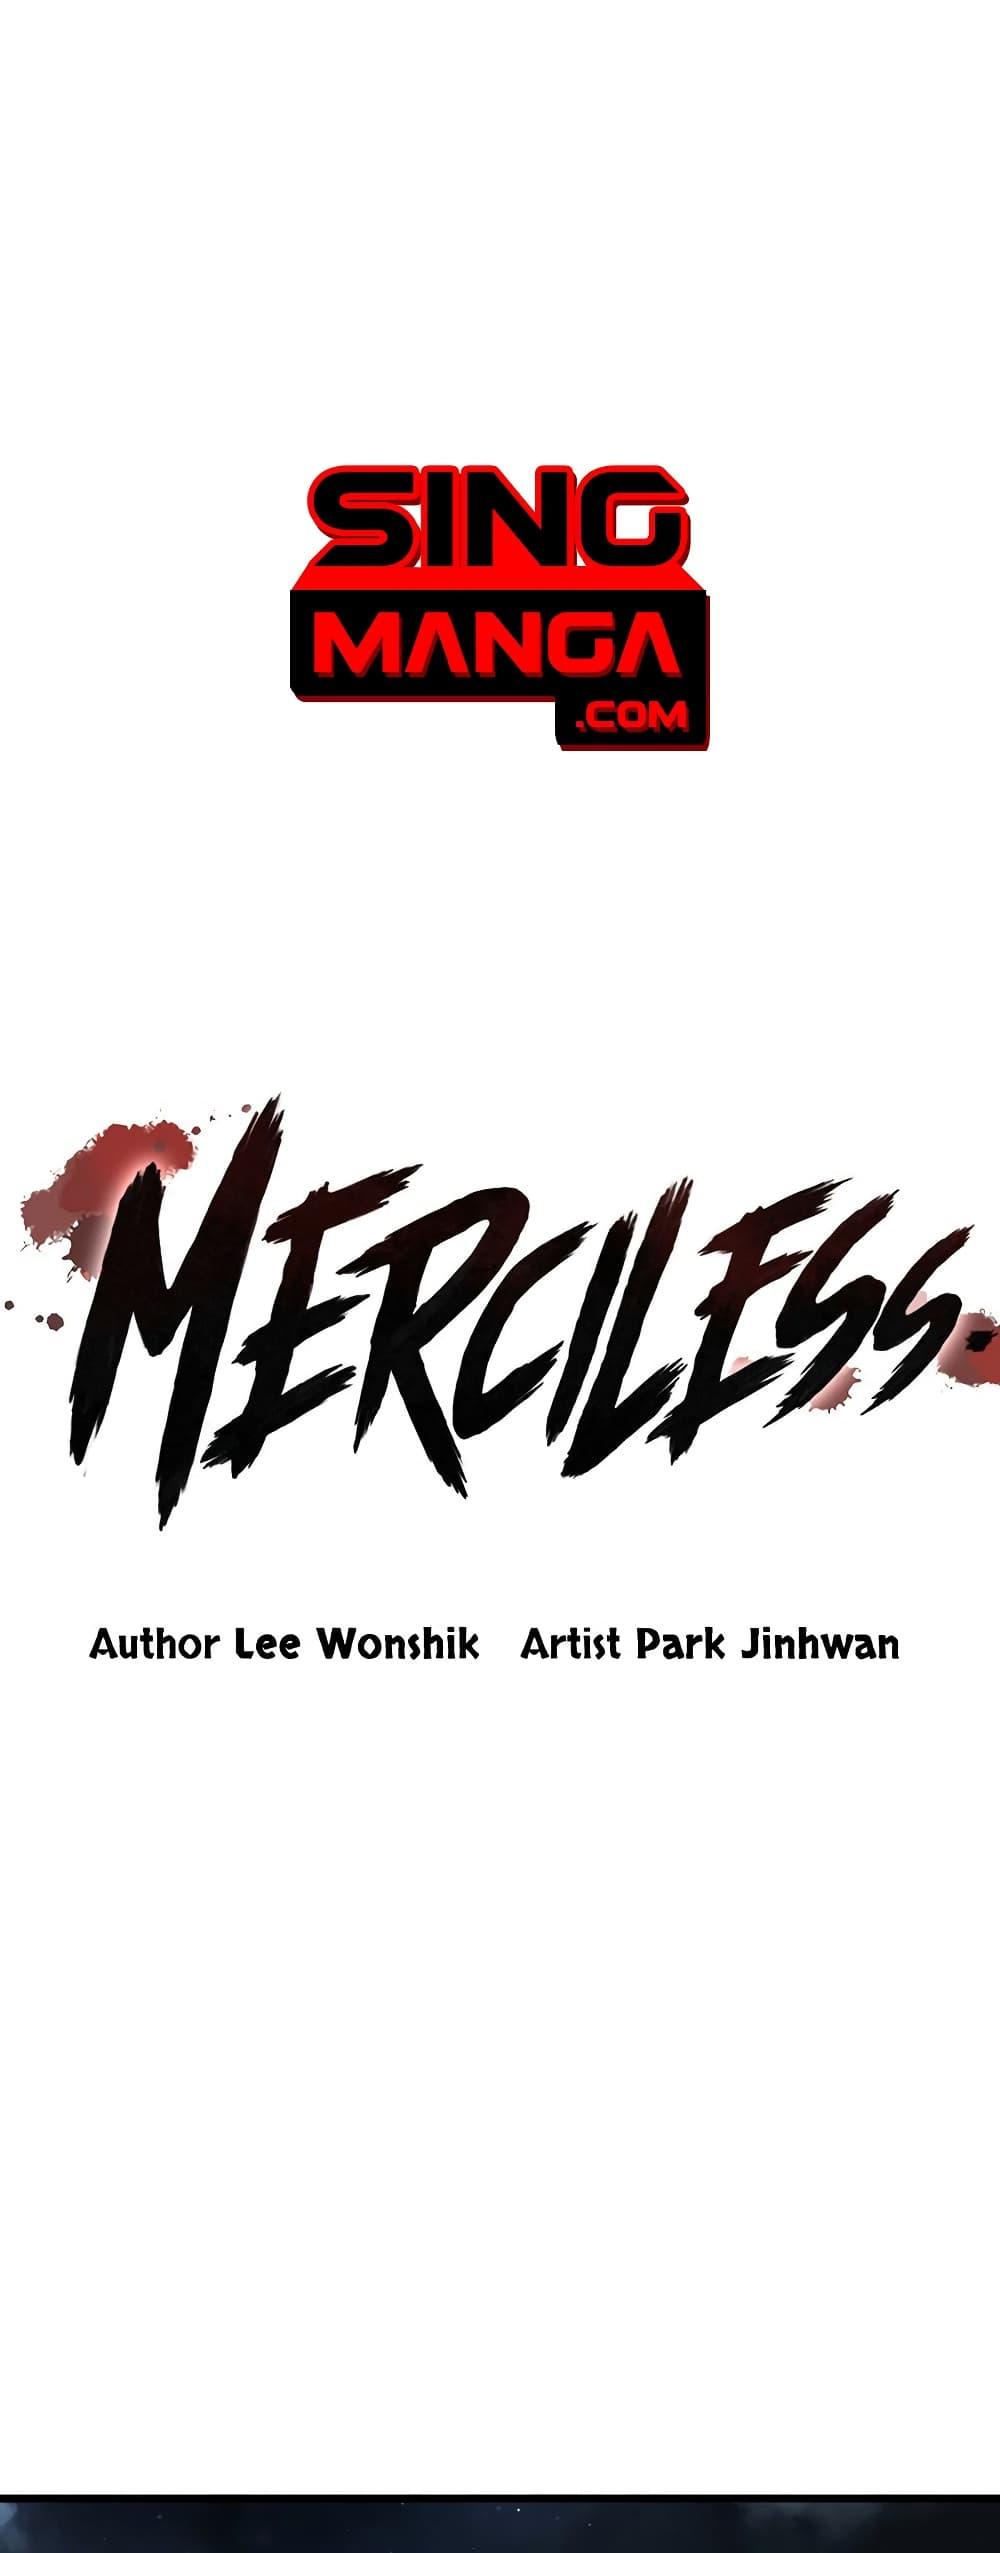 Merciless 9 01